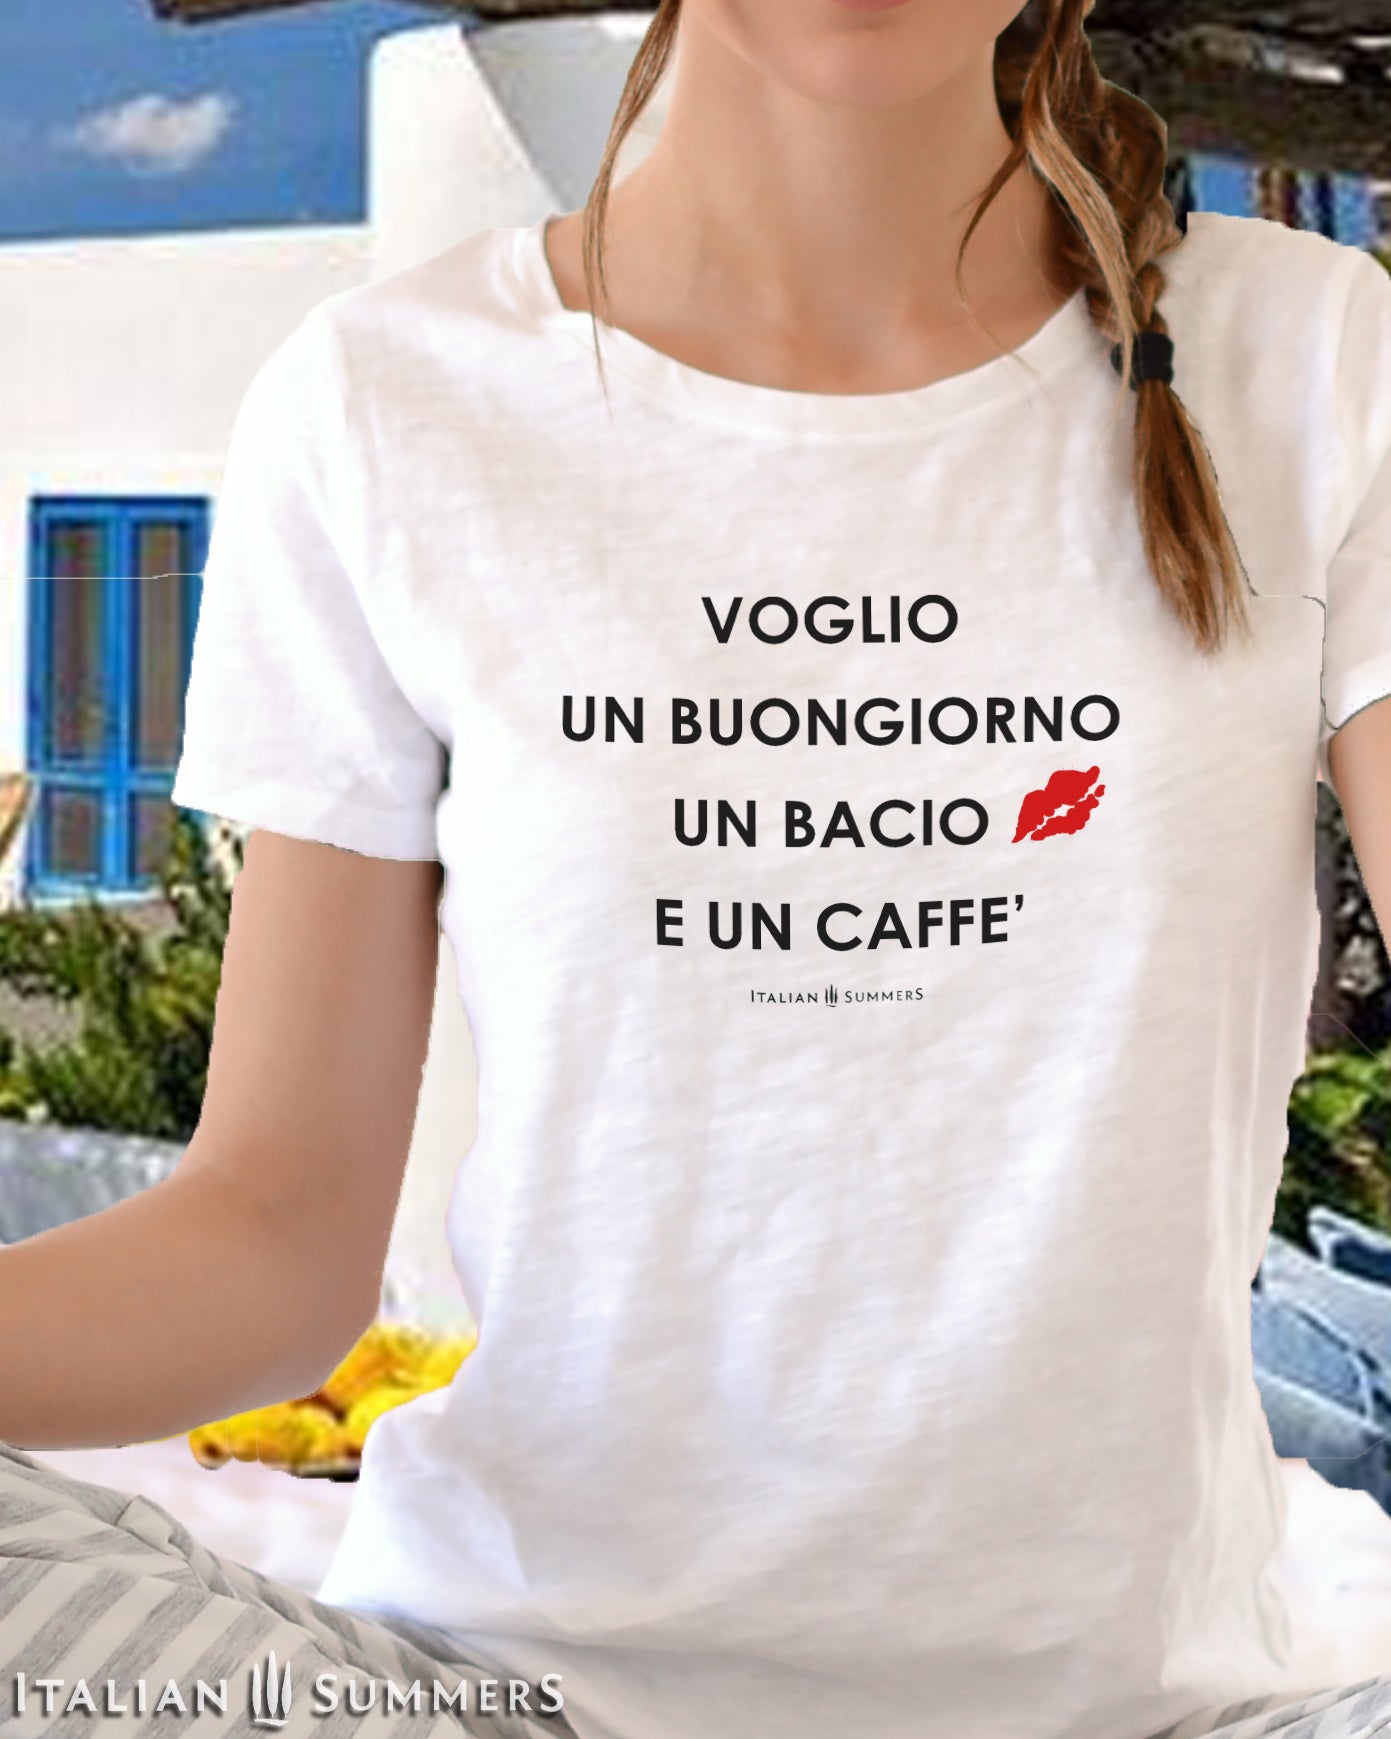 Itay inspired white cotton crew-neck unisex T shirt  with the Italian phrase: "Voglio un Buongiorno un Bacio e un Caffe'"  (I want a good-mornig, a kiss and a coffee) 